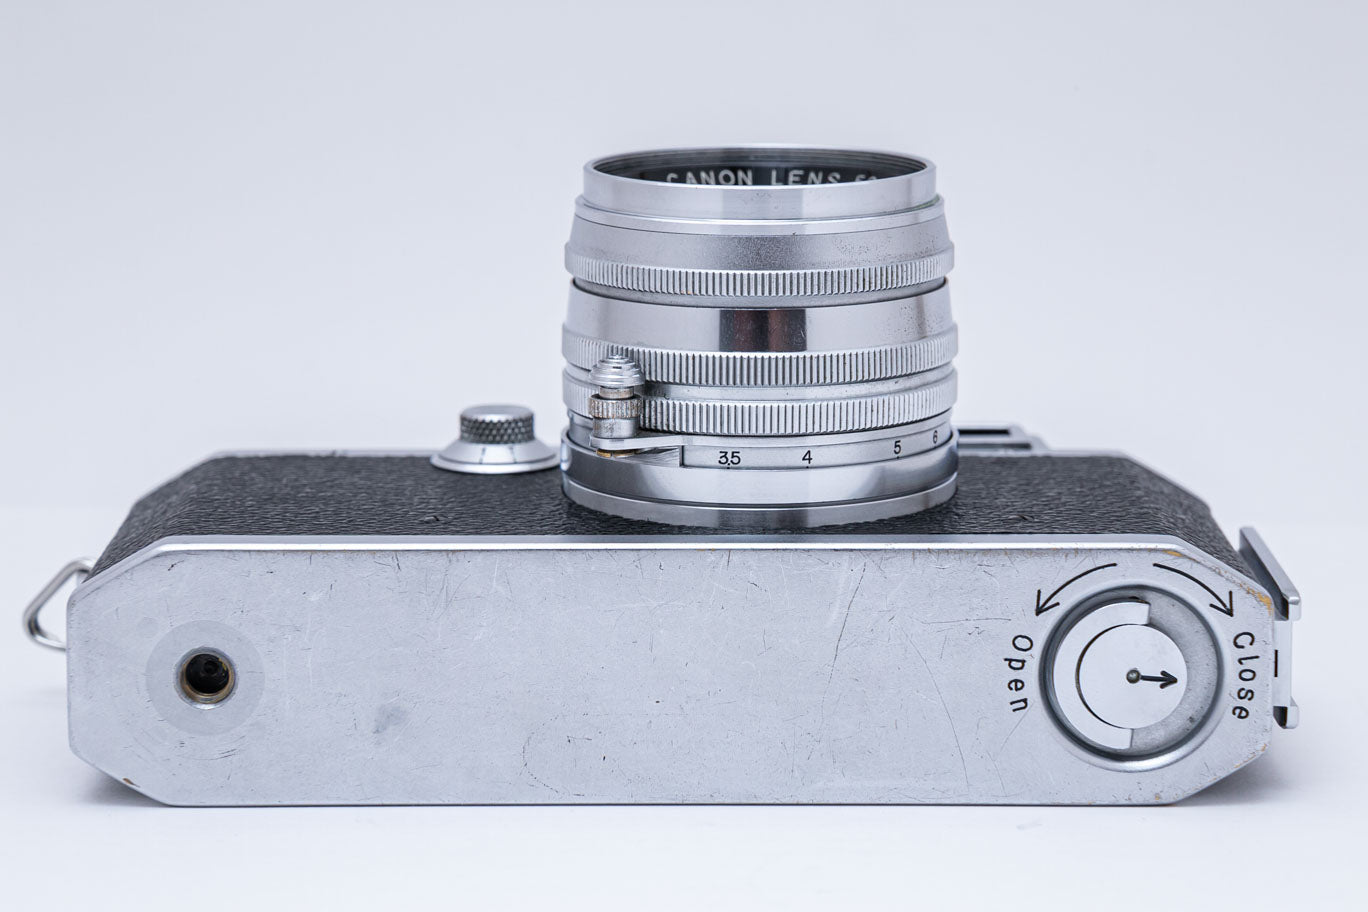 Canon IIF型, 50mm F1.8付き – ねりま中古カメラきつね堂